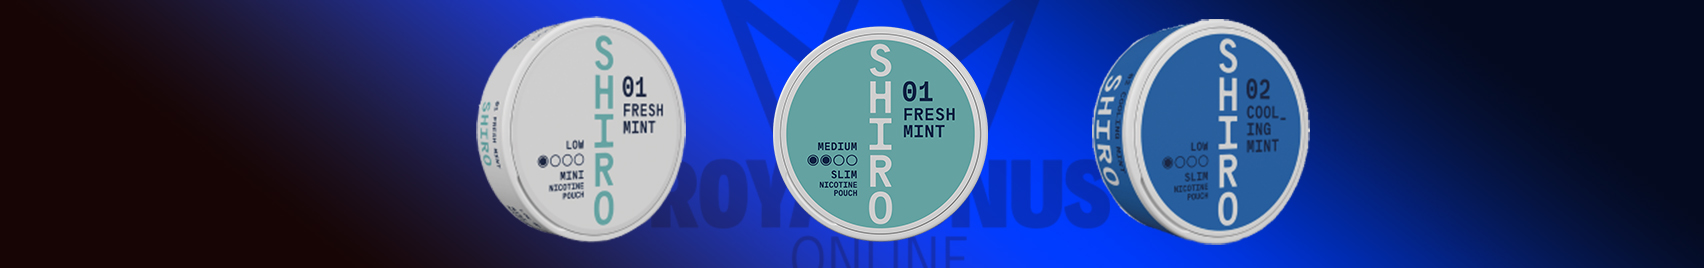 Buy Shiro Snus online, buy Shiro nicotine pouches online